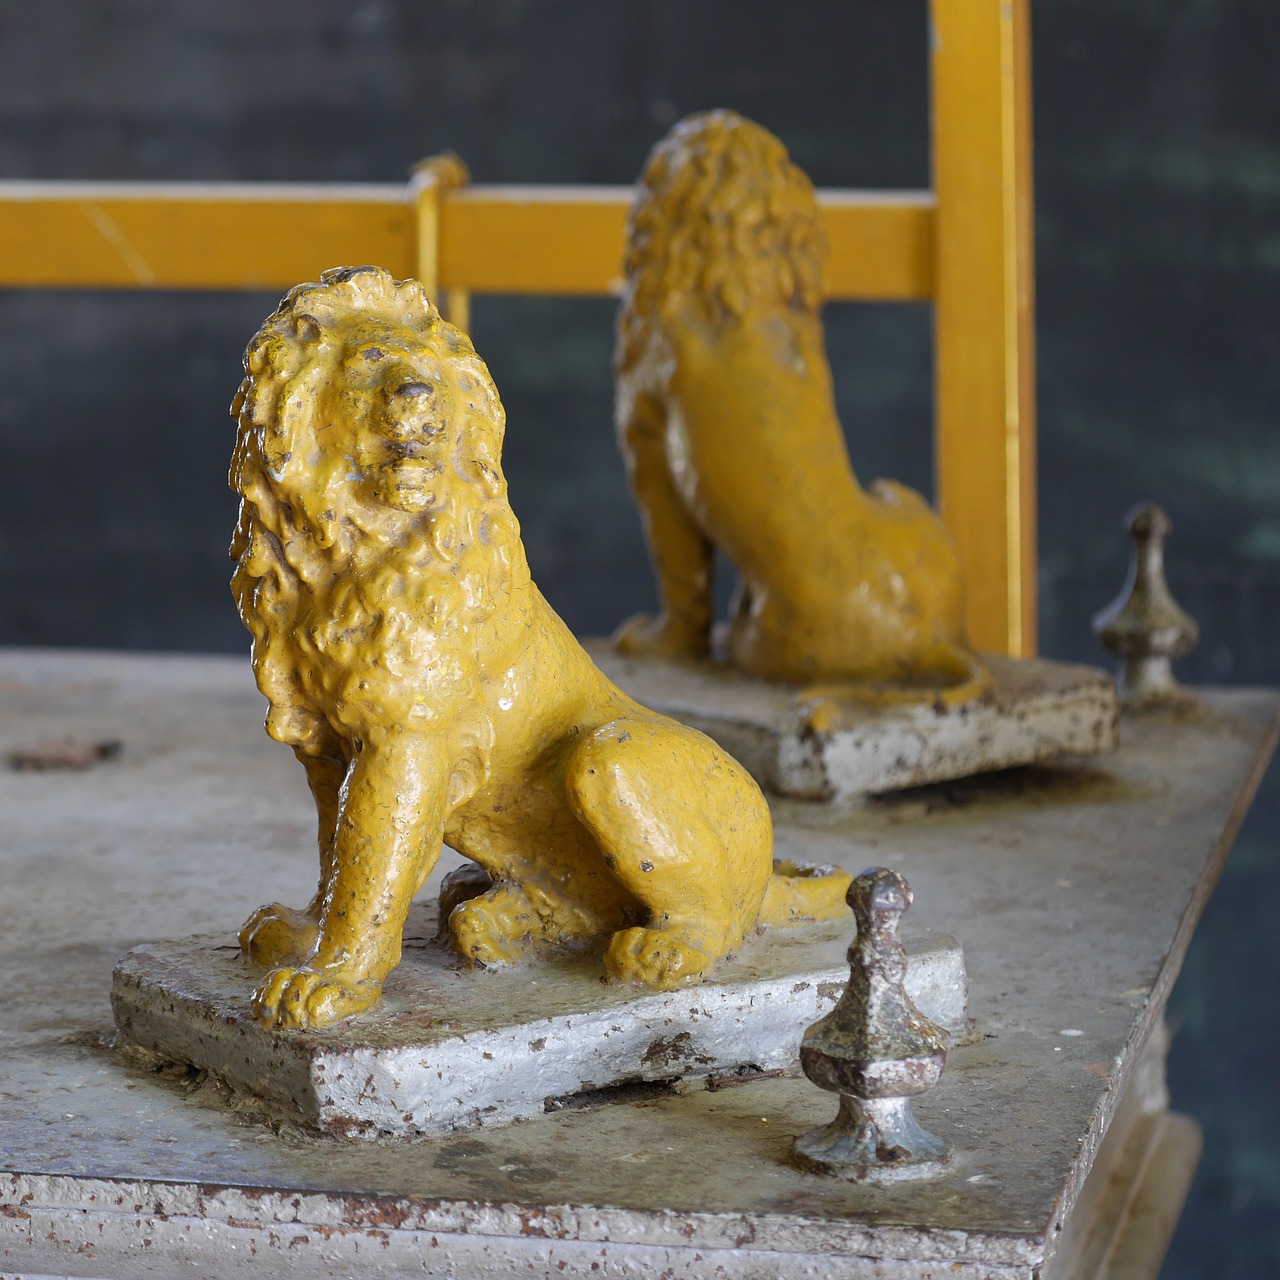 lion figure cast iron pans free photo